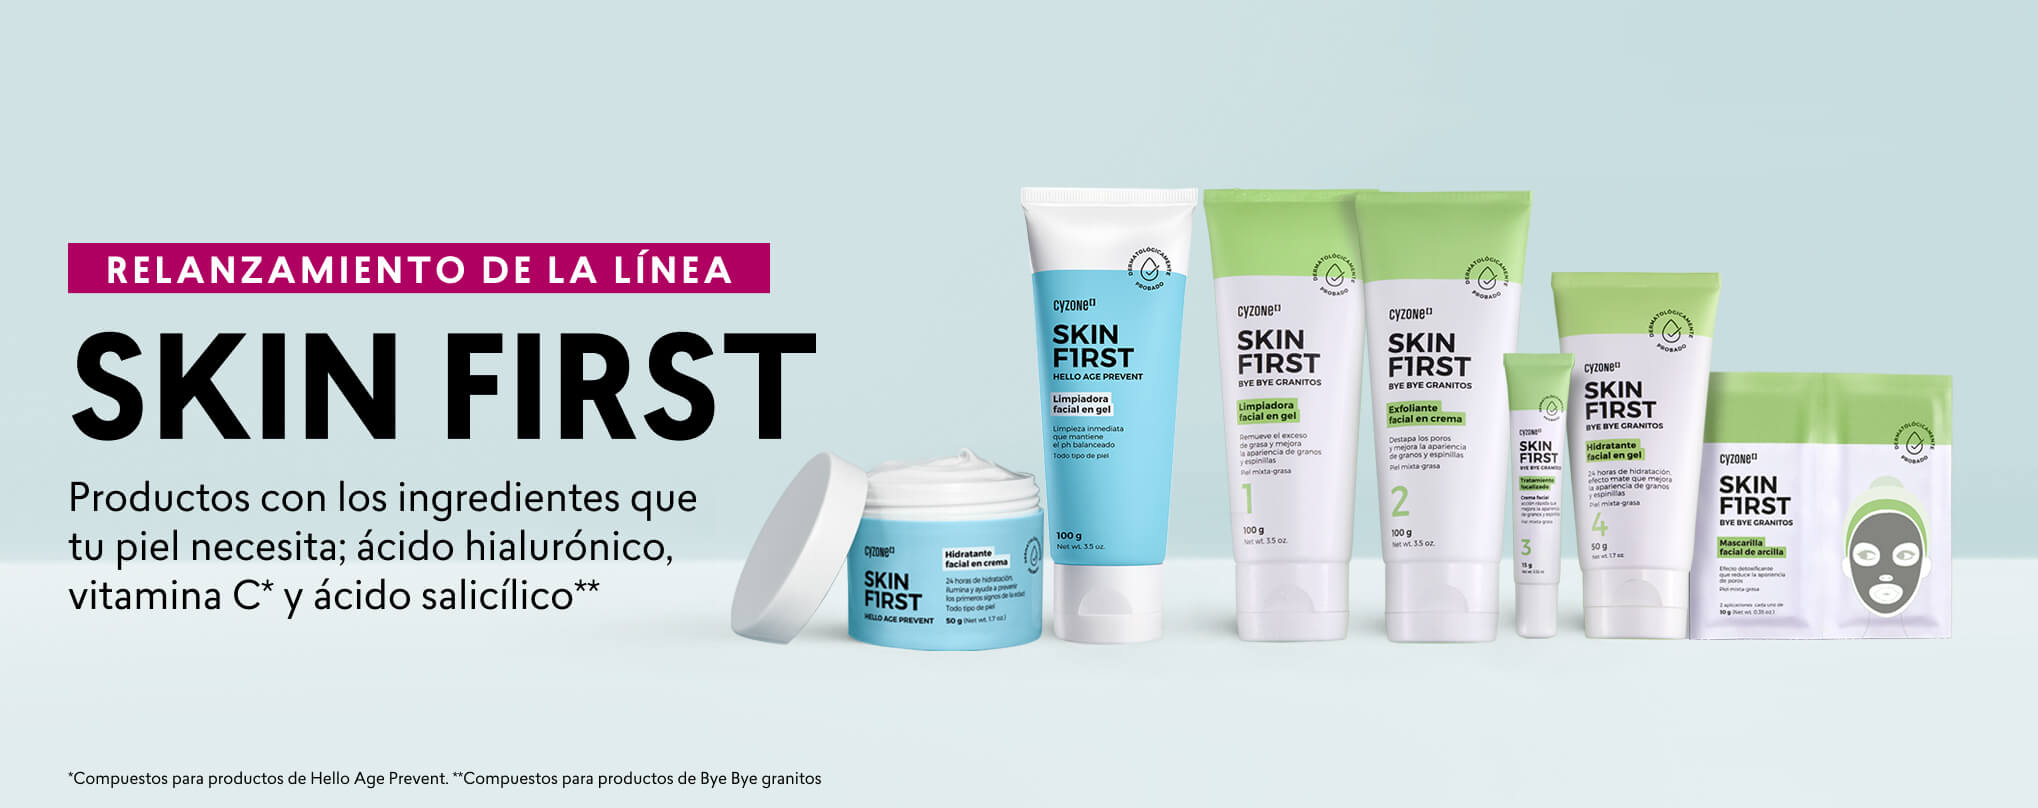 Línea de productos para el cuidado de la piel skin first de cyzone ideal para cuidados de la piel joven